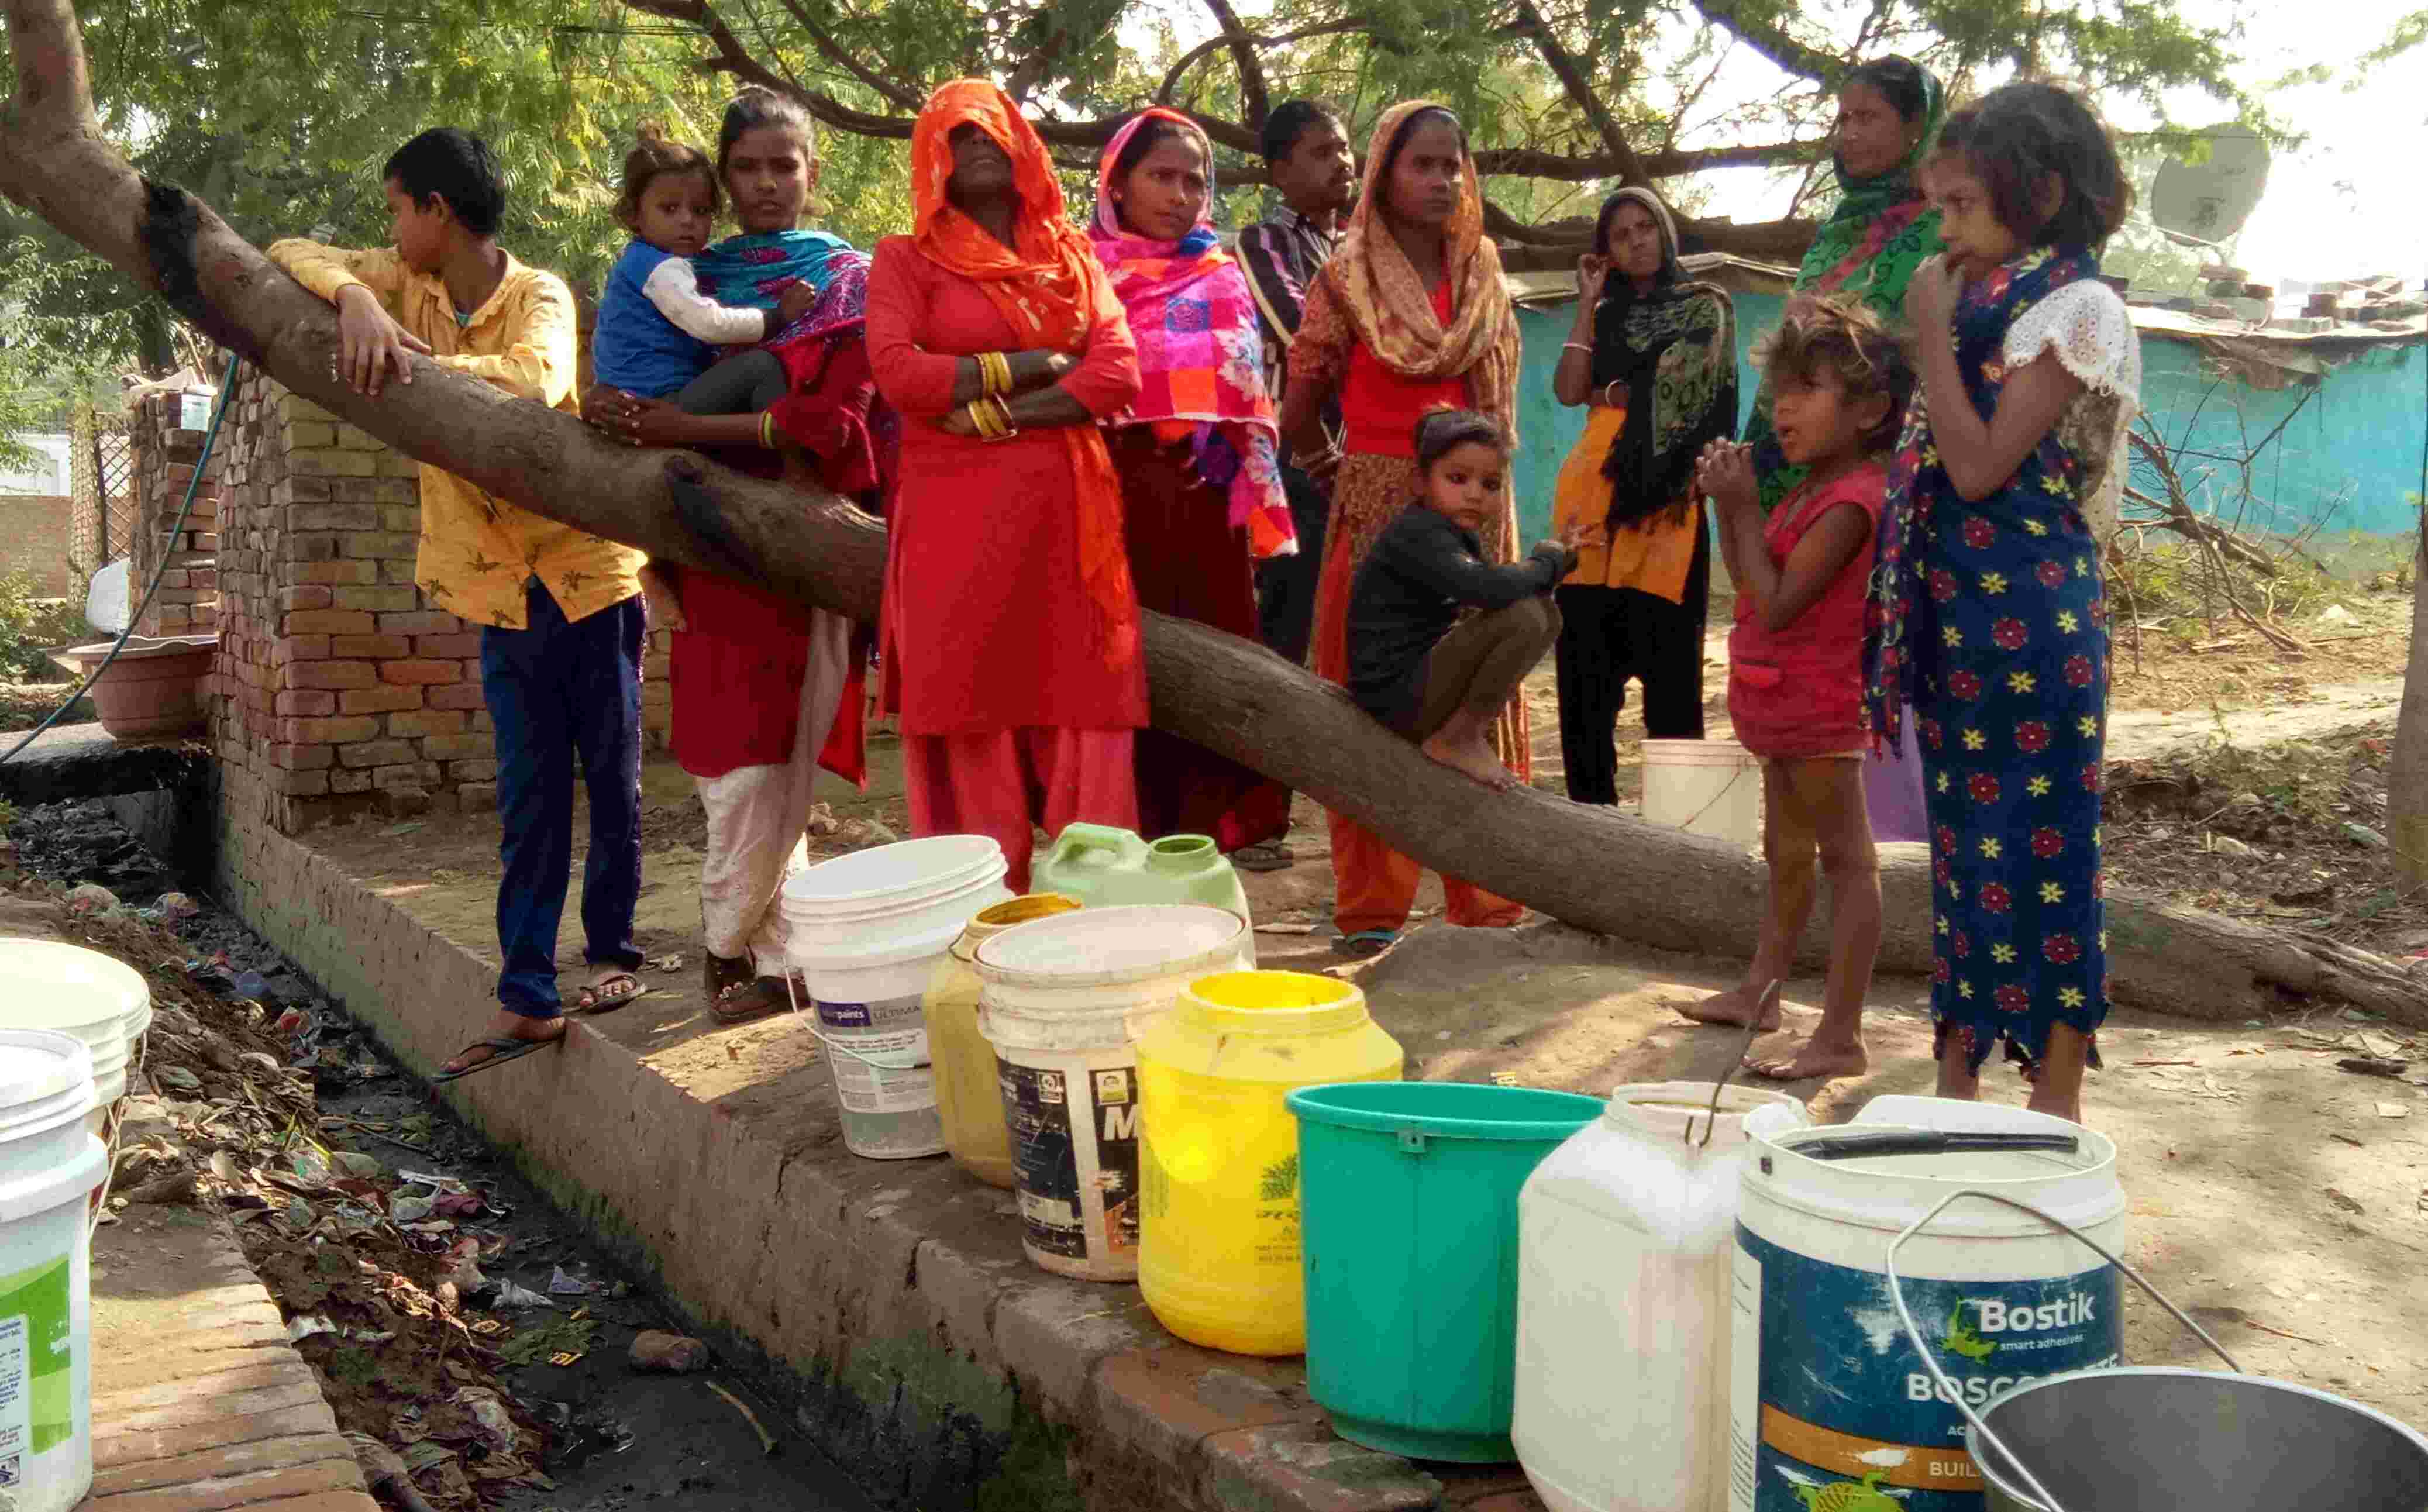 Impact : कानपुर में सीवर पानी की समस्या को लेकर  जनता के साथ धरने पर बैठे पार्षद, जनज्वार ने प्रमुखता से दिखाई थी खबर